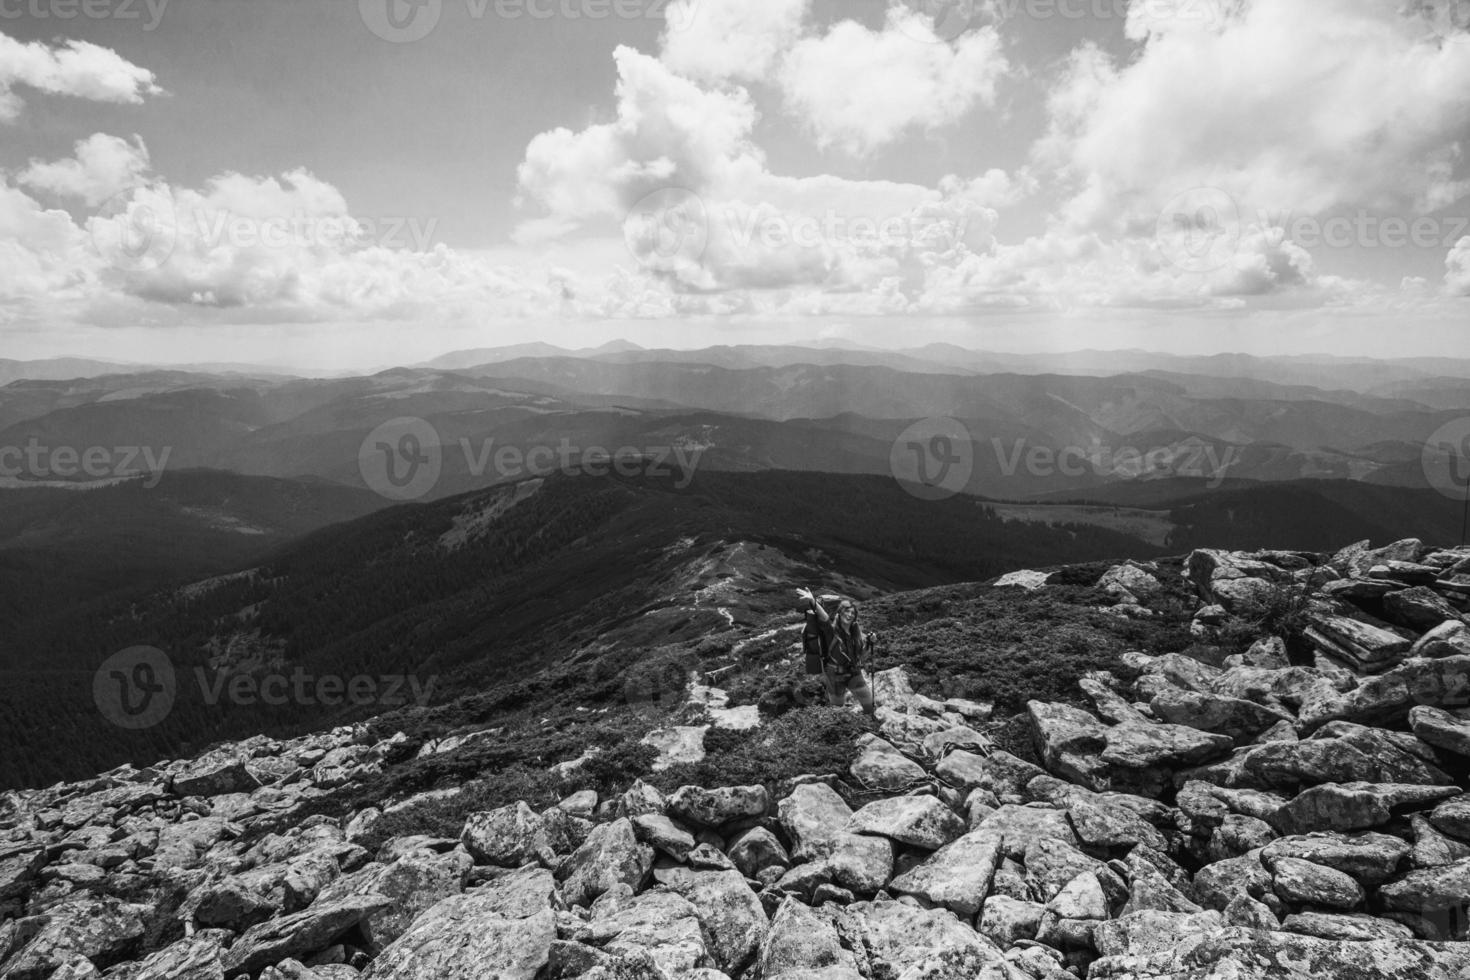 Tourist on mountain ridge monochrome landscape photo